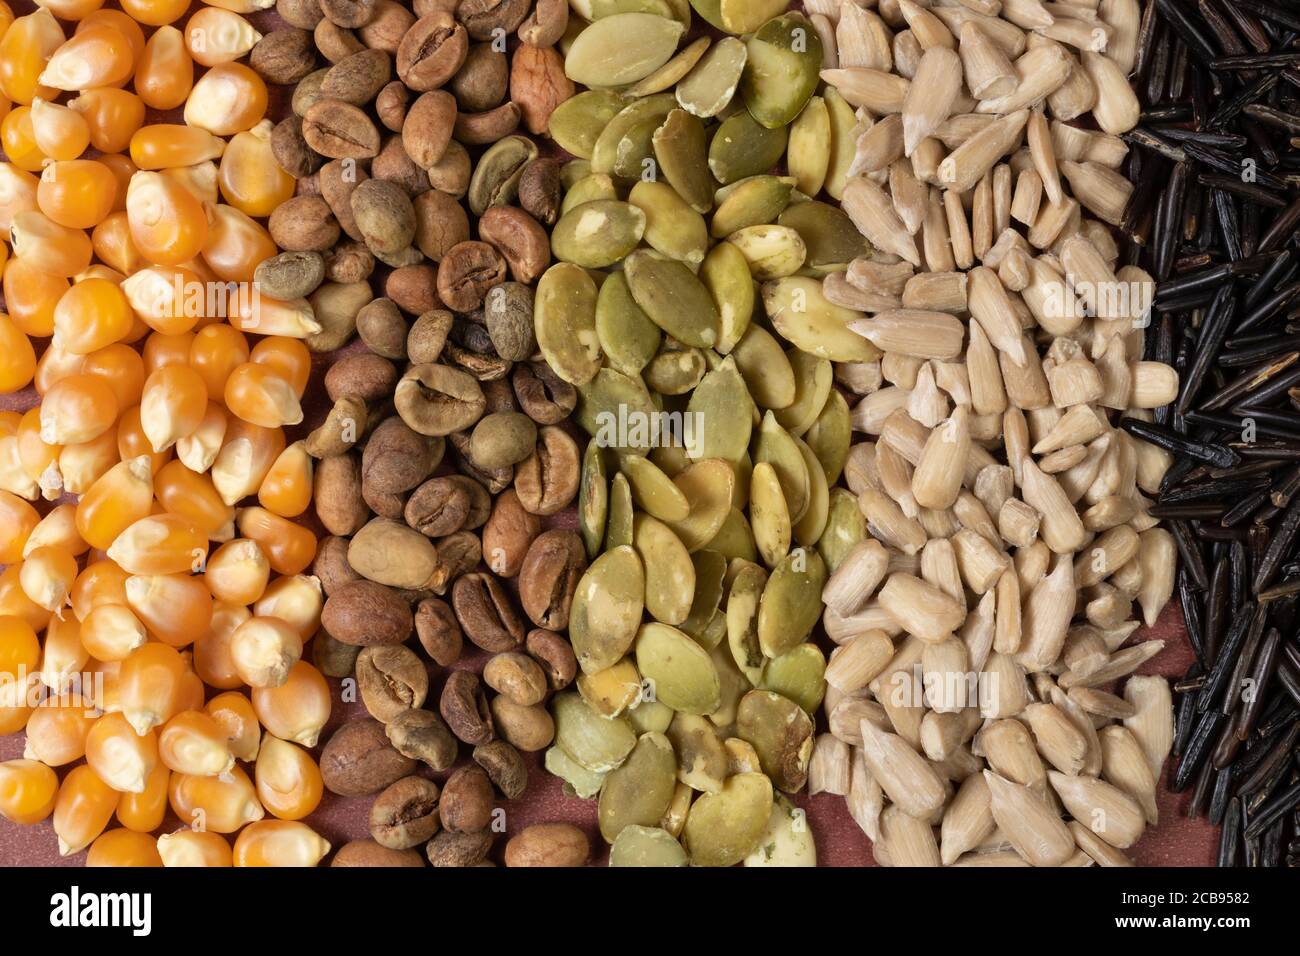 Verschiedene Getreide und Samen - Mais, Kürbis, Kaffee, Quinoa, Pfeffer, Reis, Hirse Sonnenblume - auf einer braunen Oberfläche Stockfoto